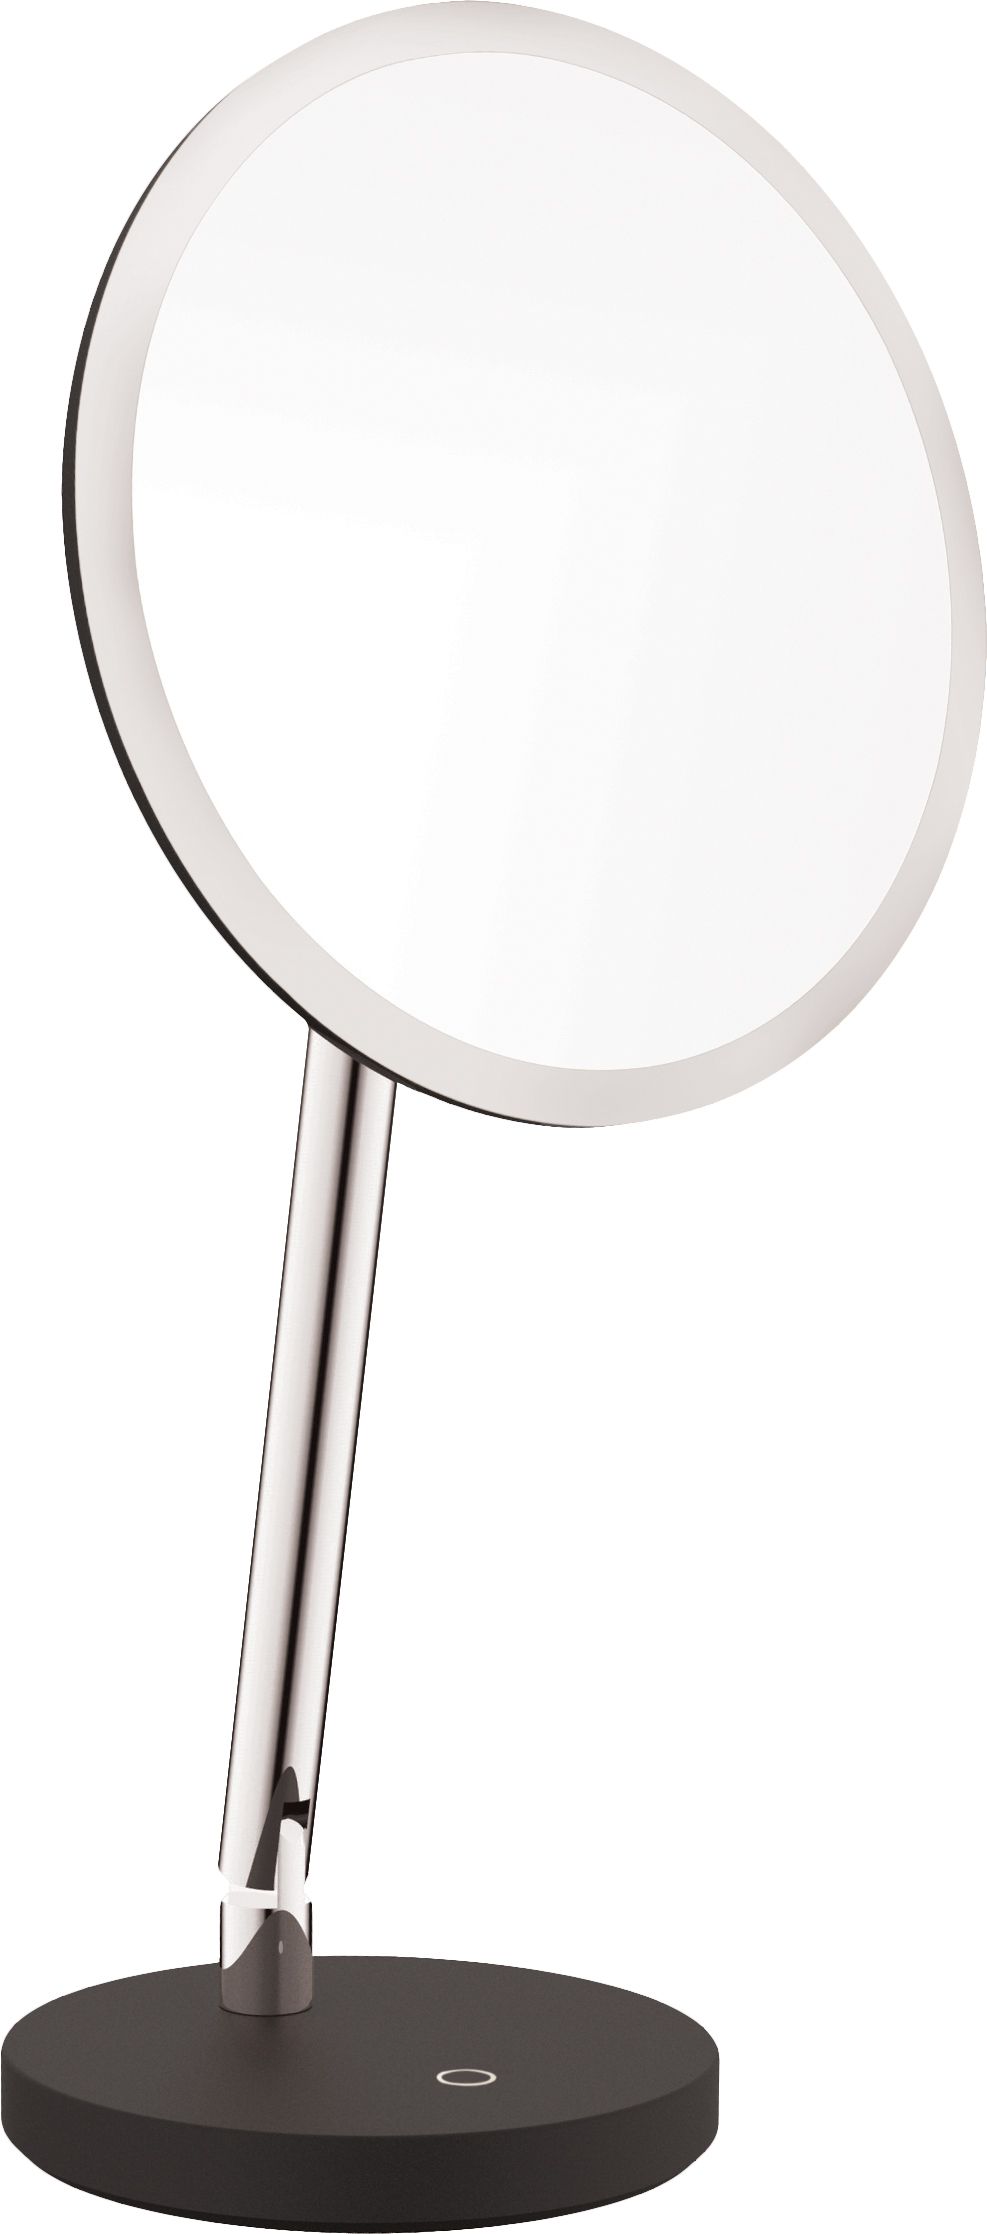 Cosmetic mirror, standing - LED light - ADI_0812 - Główne zdjęcie produktowe